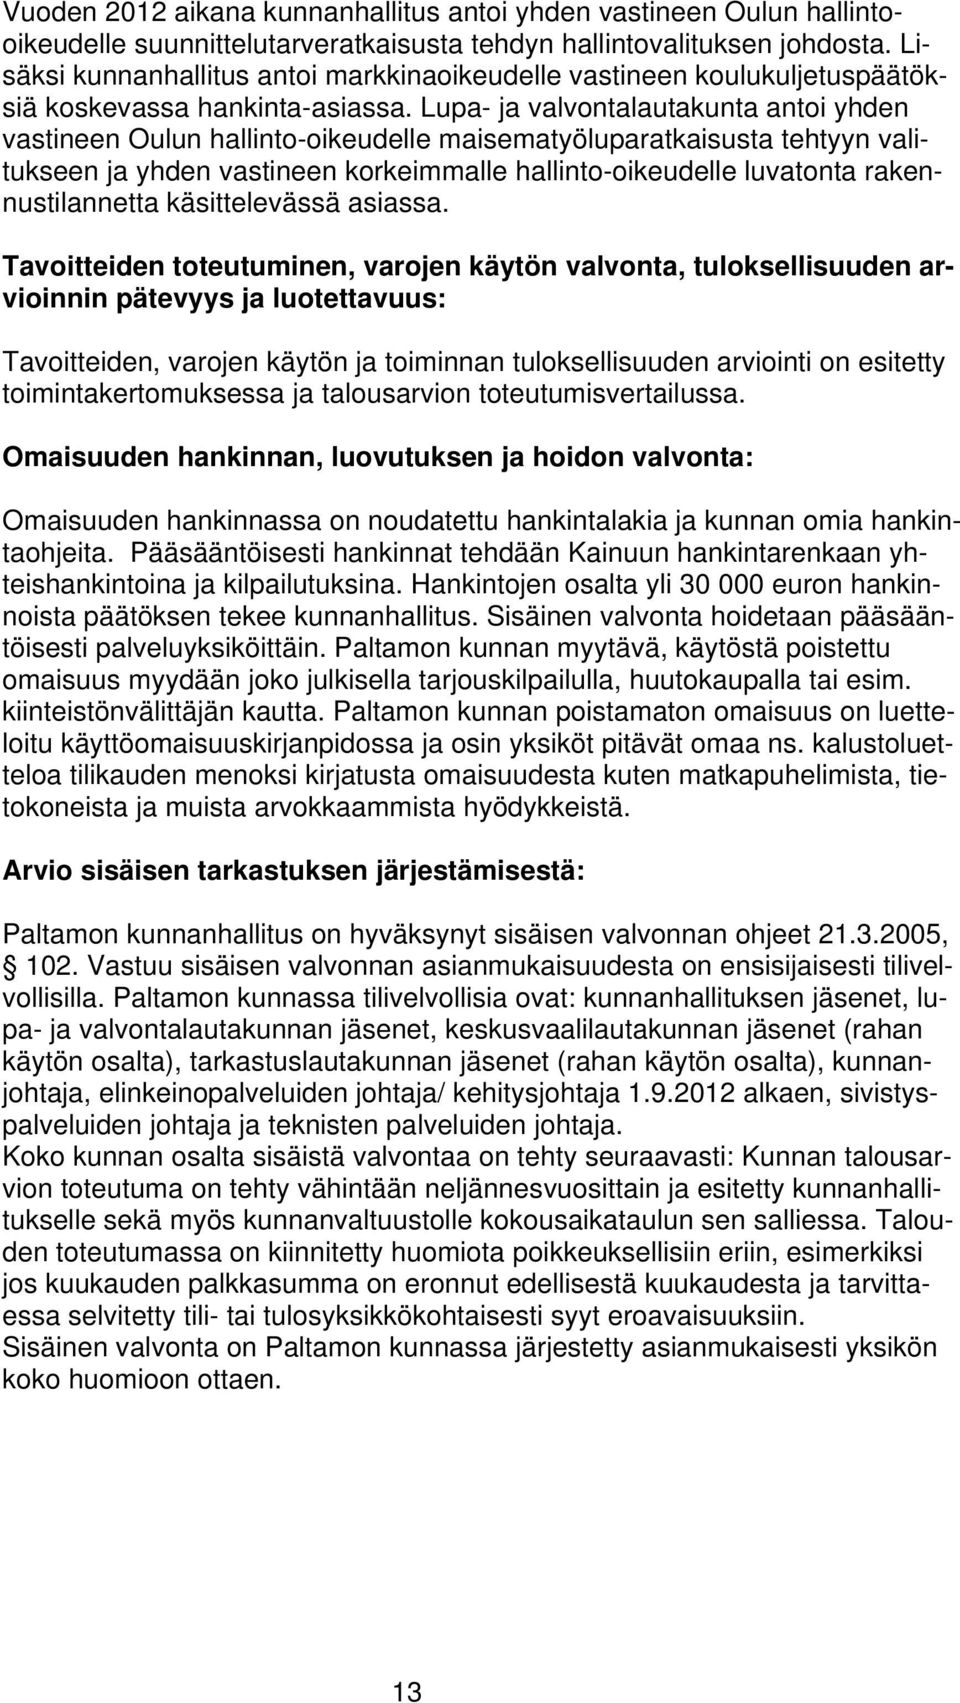 Lupa- ja valvontalautakunta antoi yhden vastineen Oulun hallinto-oikeudelle maisematyöluparatkaisusta tehtyyn valitukseen ja yhden vastineen korkeimmalle hallinto-oikeudelle luvatonta